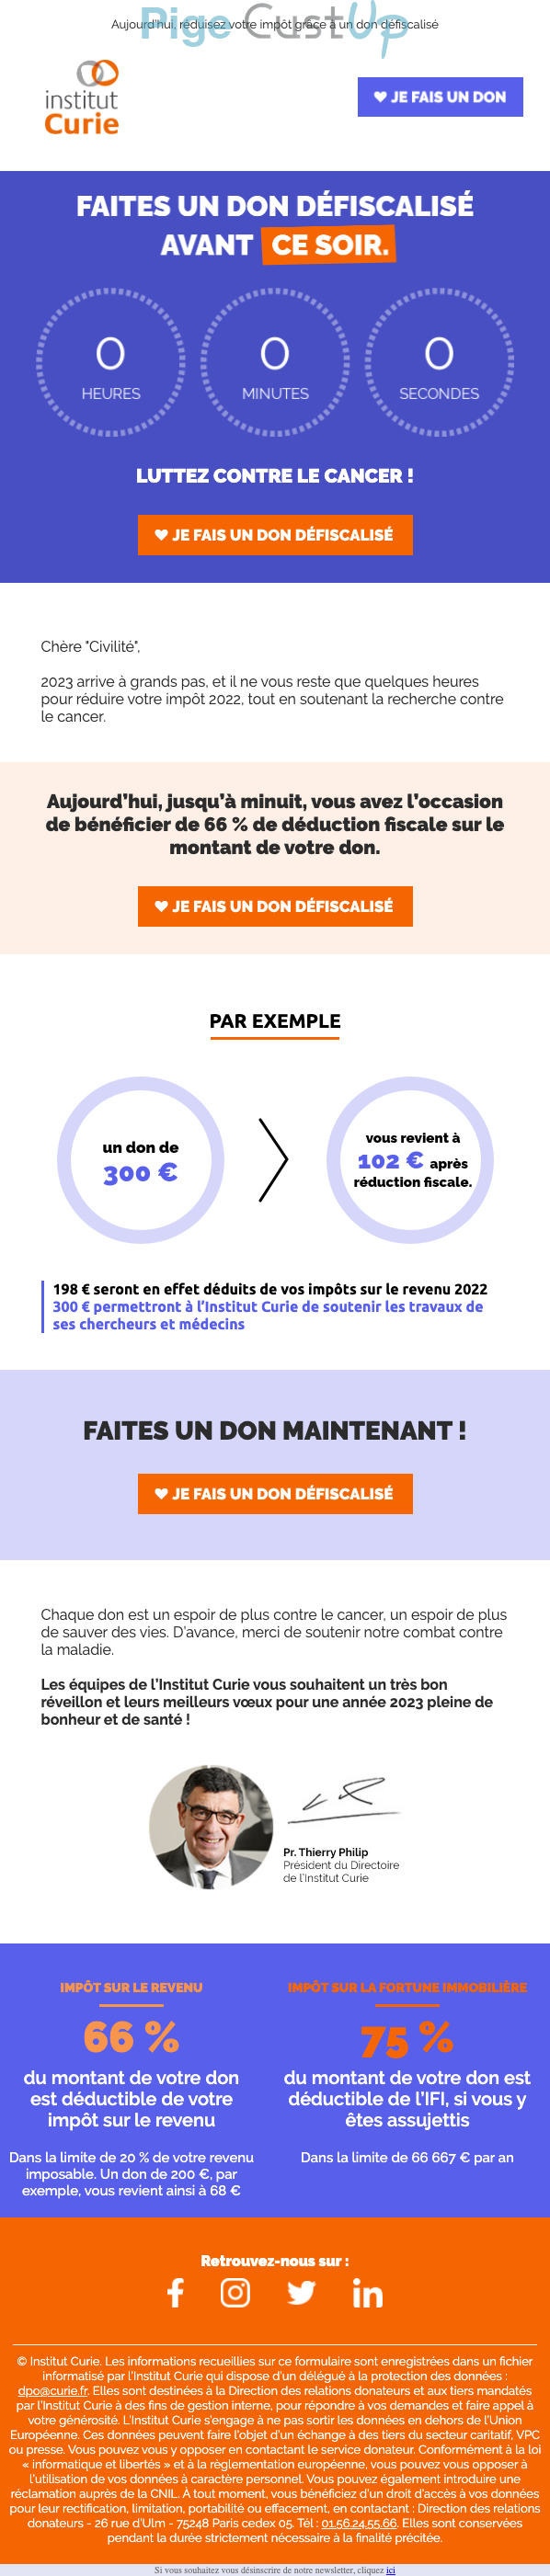 Exemple de Type de media  e-mailing - Institut Curie - Marketing Acquisition - Collecte de dons - Derniers jours